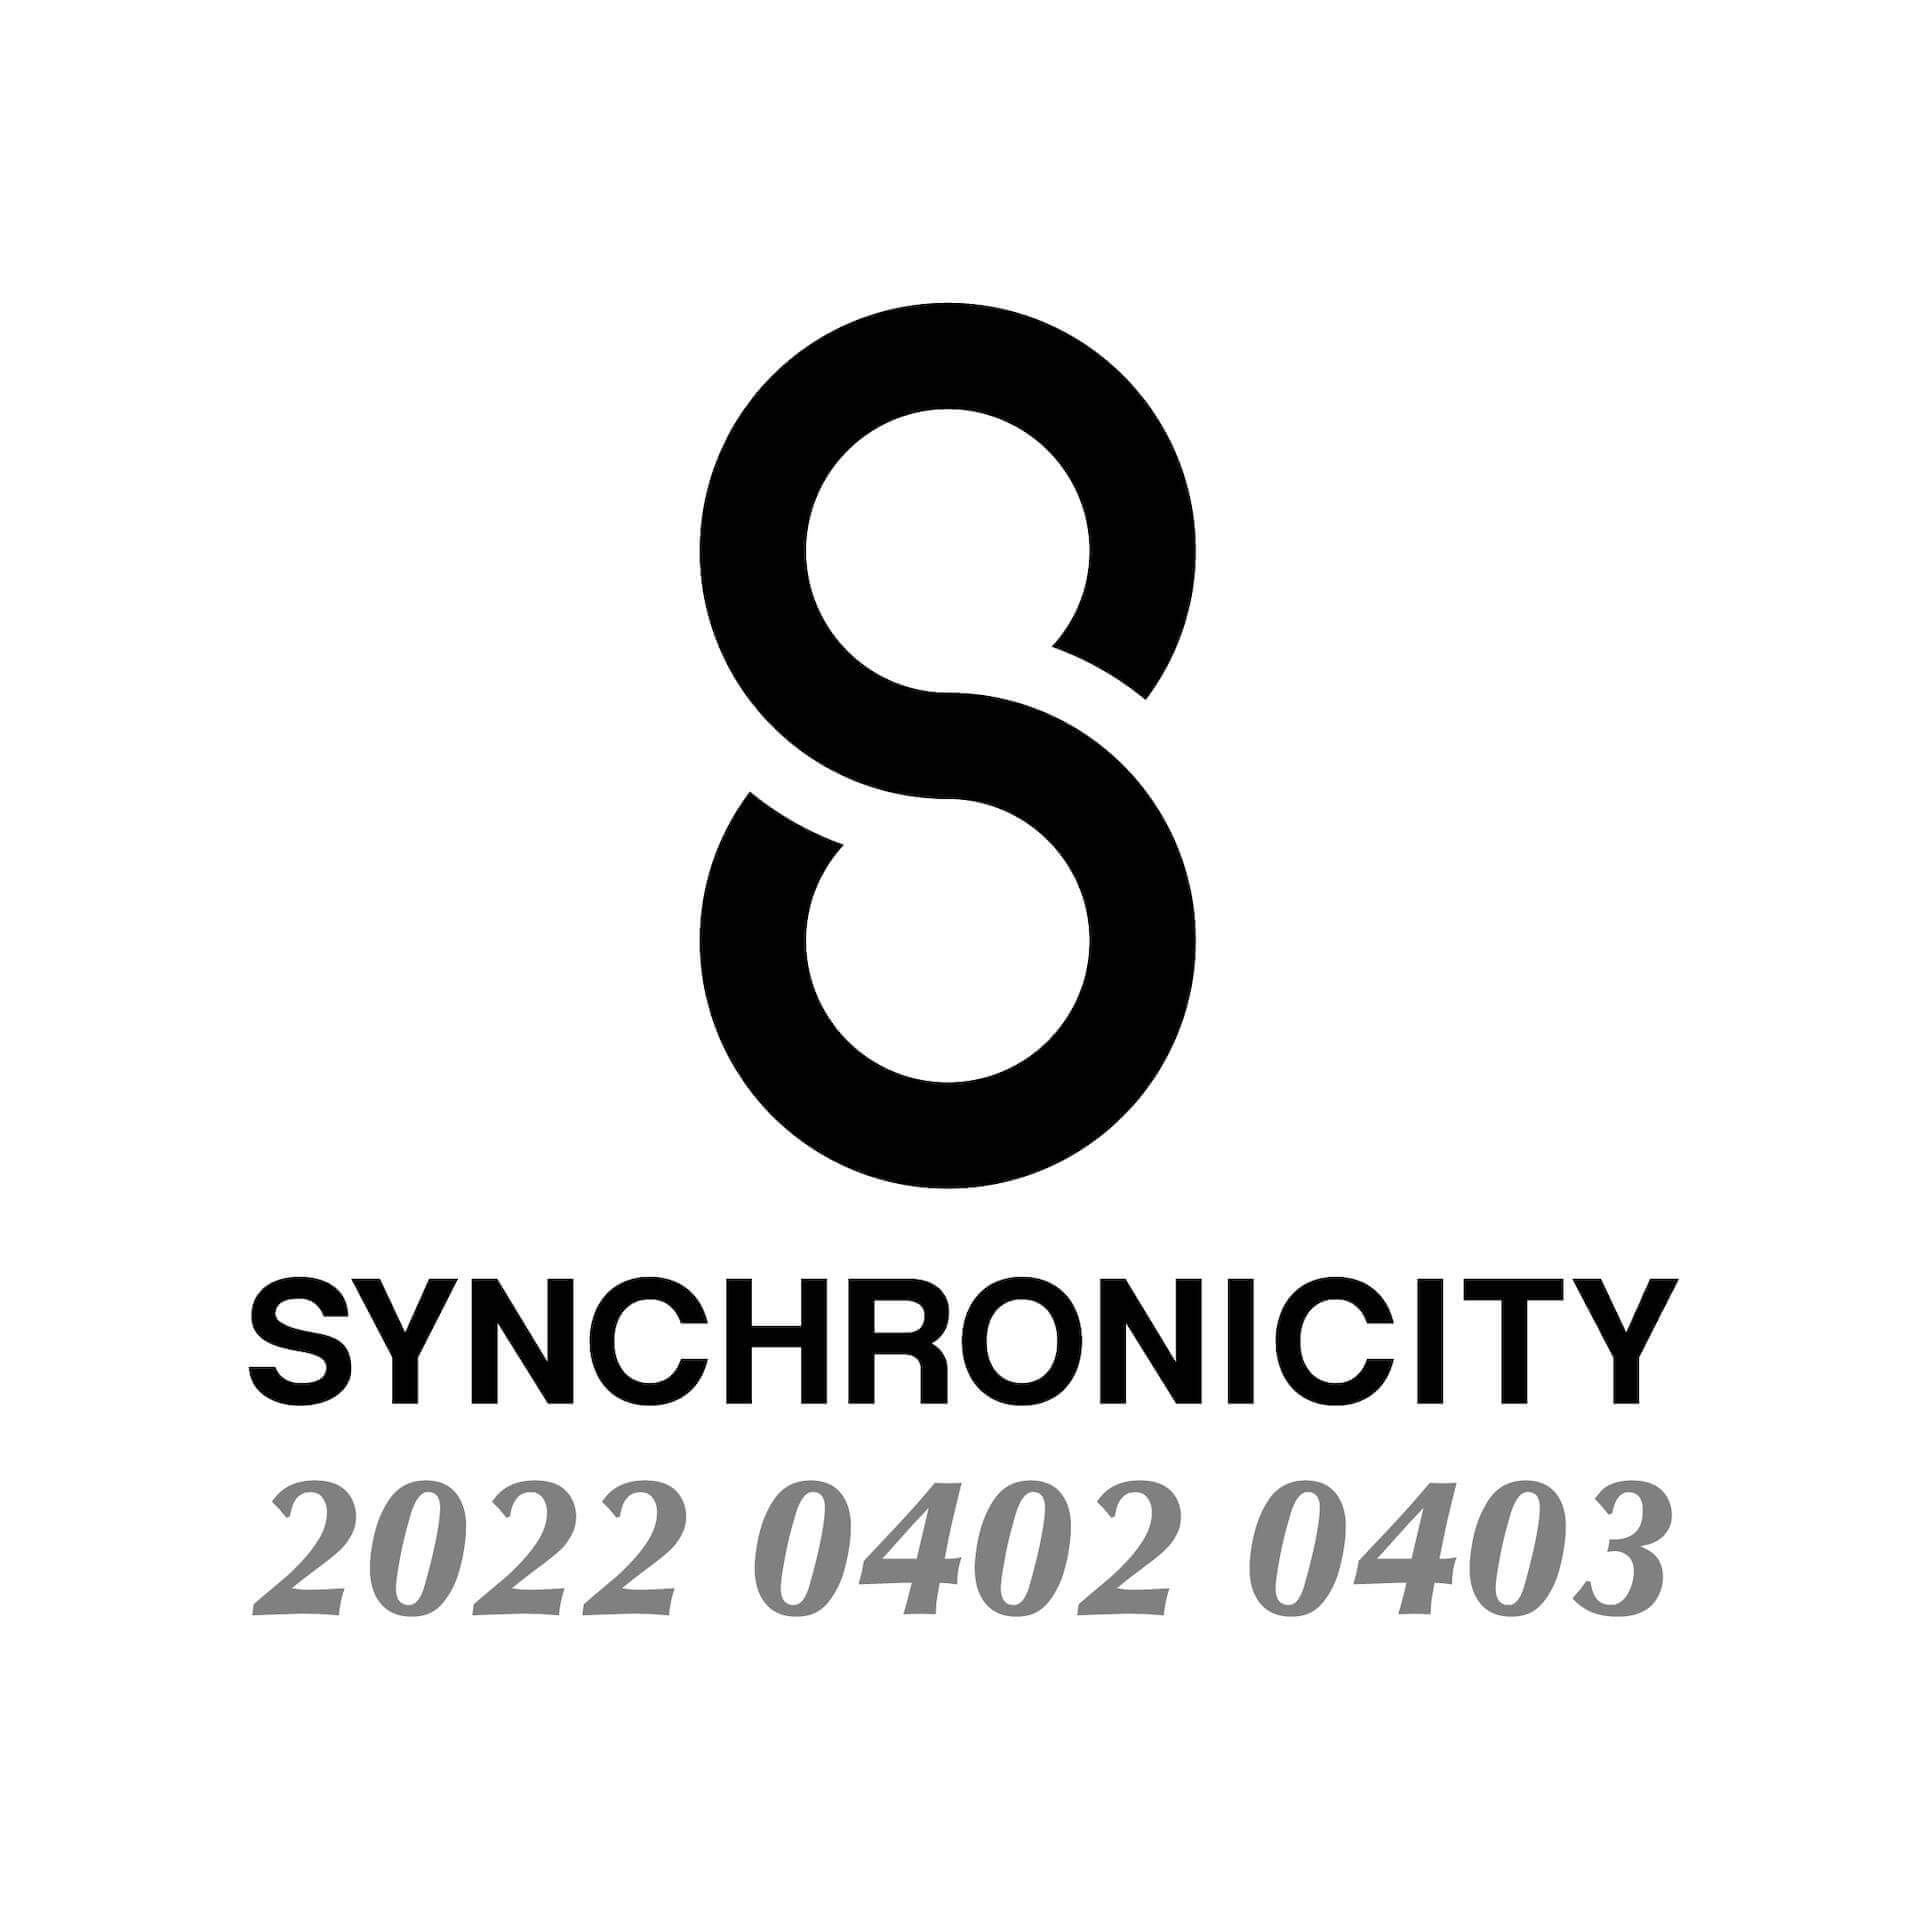 ＜SYNCHRONICITY’22＞、第1弾ラインナップにSOIL&“PIMP”SESSIONS、水曜日のカンパネラ、羊文学など15組が発表！早割通し券発売スタート music_220127_synchro_04